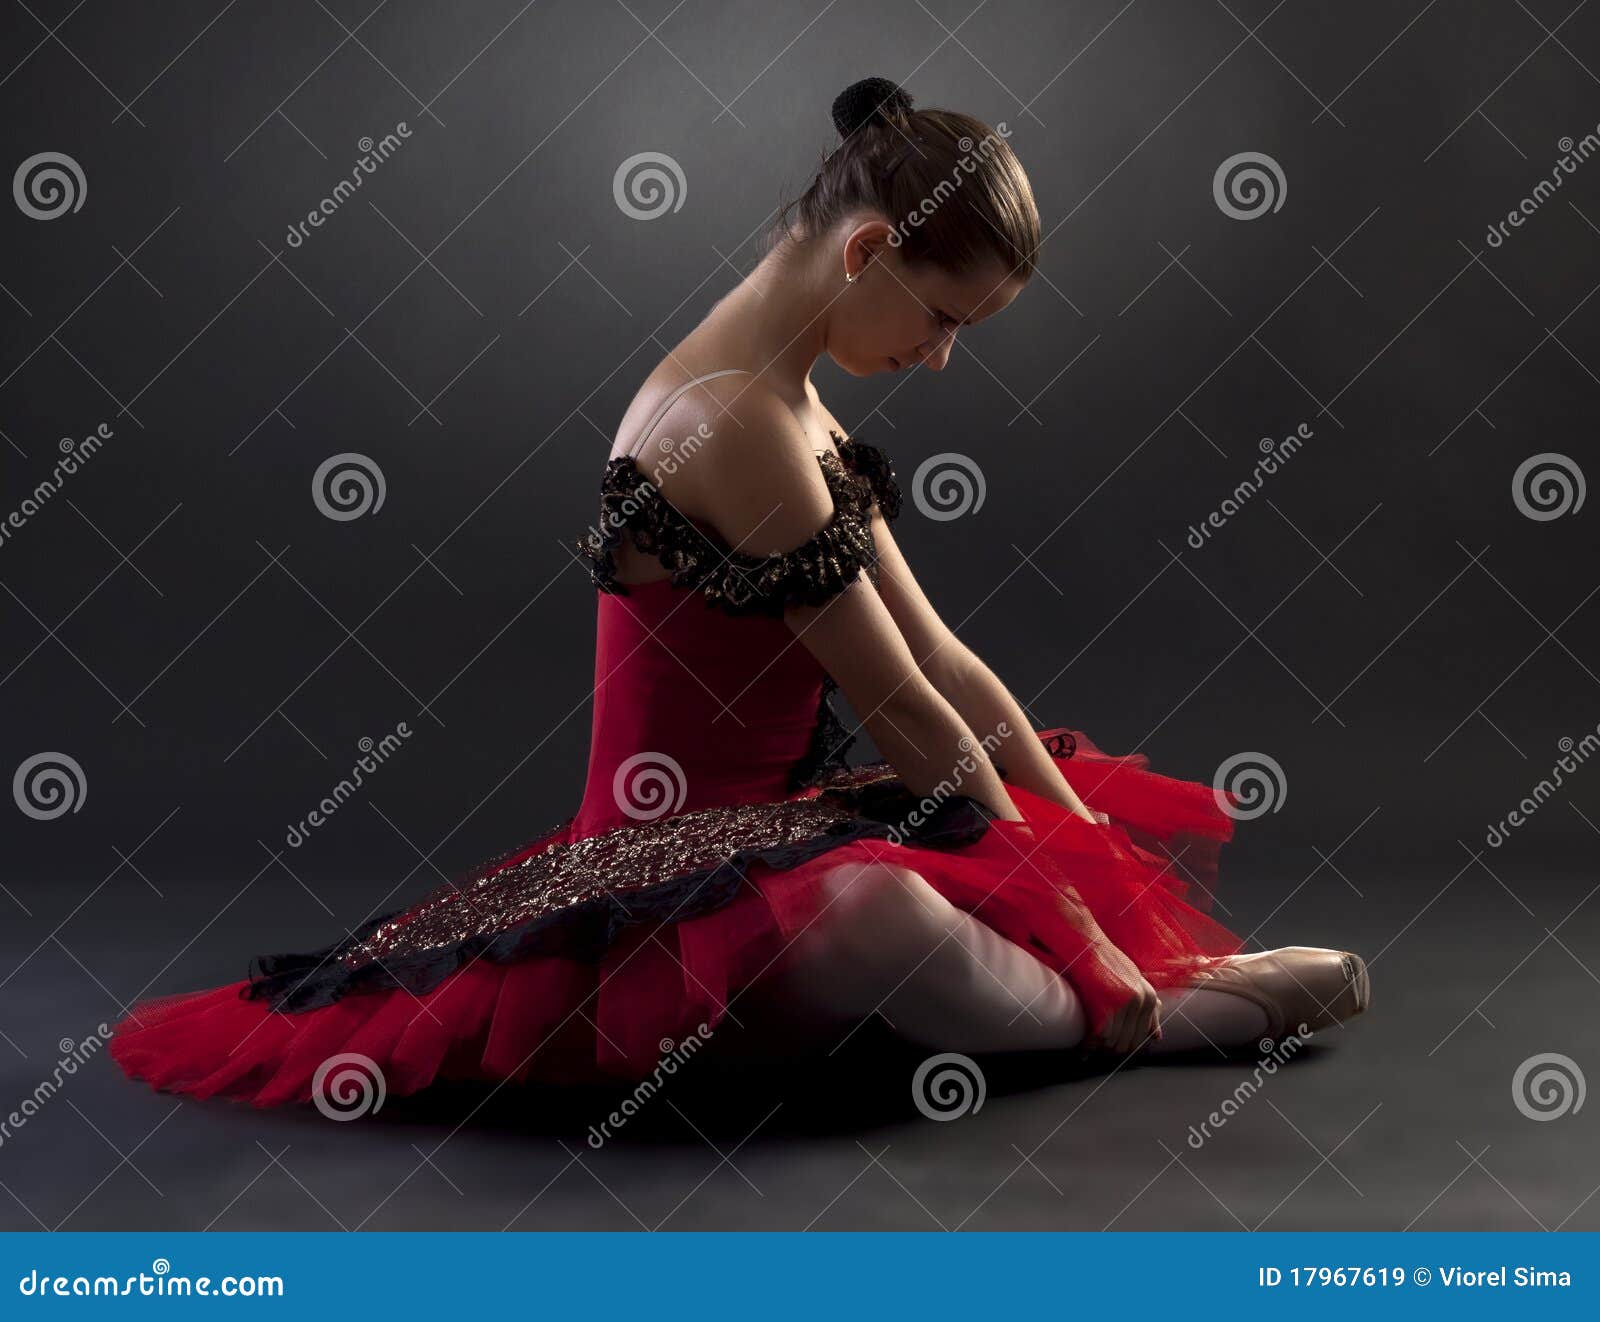 Ballerina In Red Tutu Stock Image Image Of Light Full 17967619